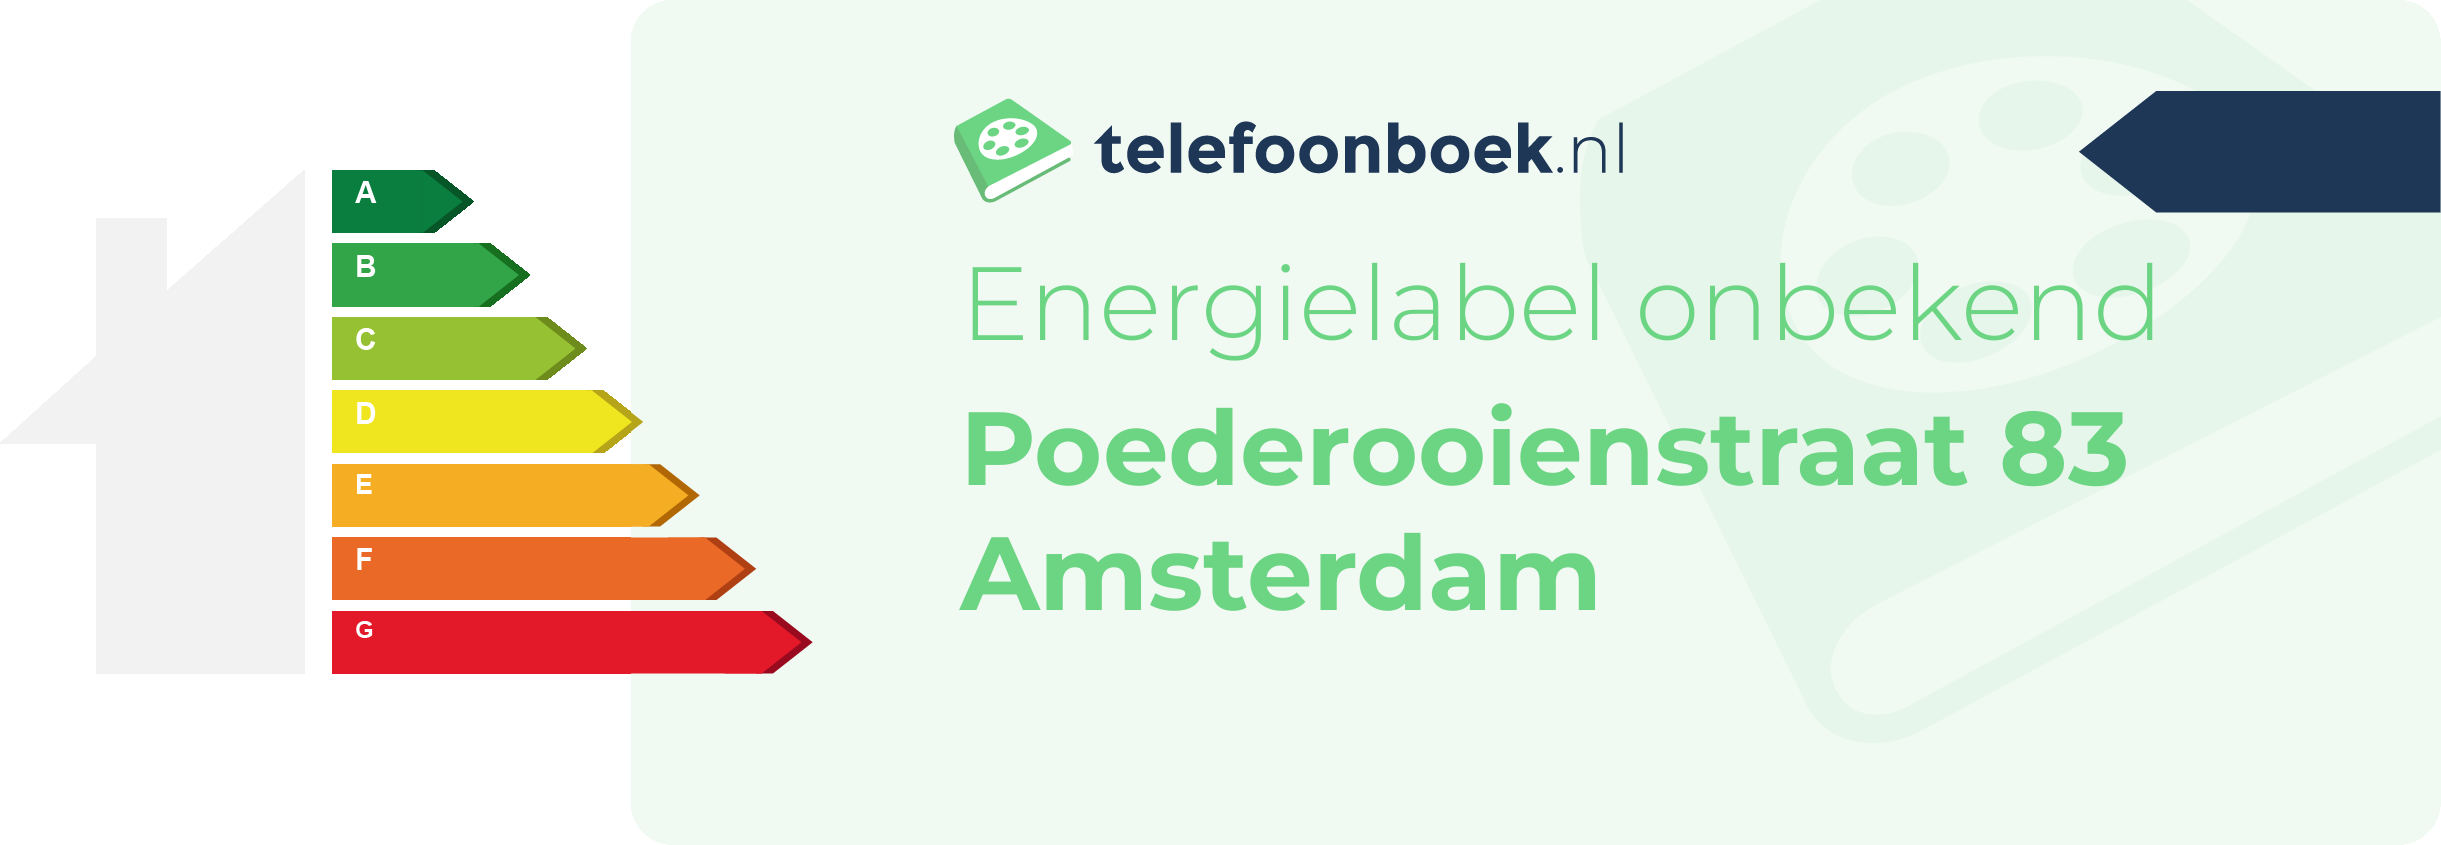 Energielabel Poederooienstraat 83 Amsterdam